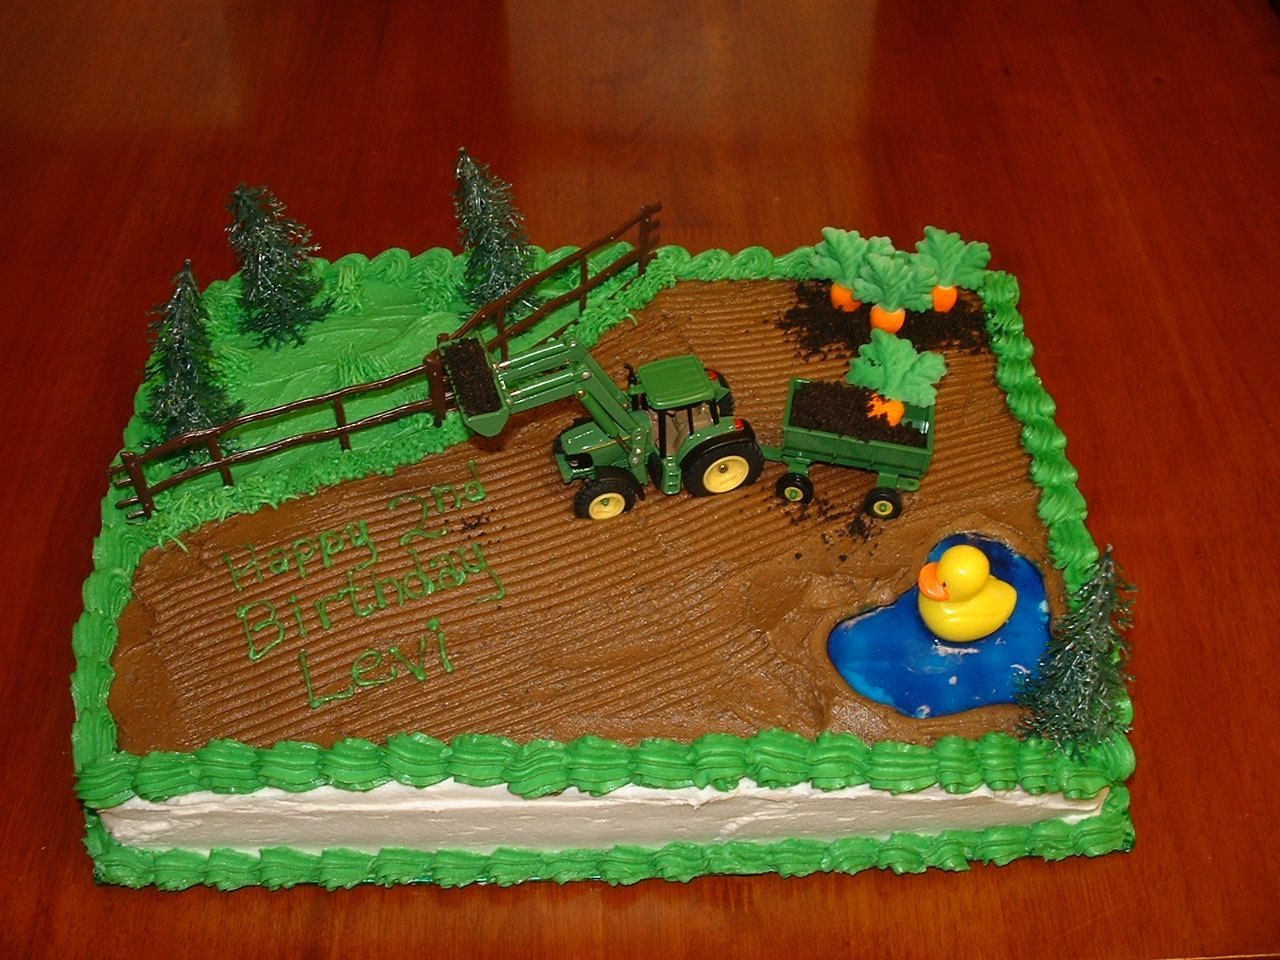 Tractor Birthday Cakes Tractor Birthday Cake Farm Tractor Birthday Cake Childrens